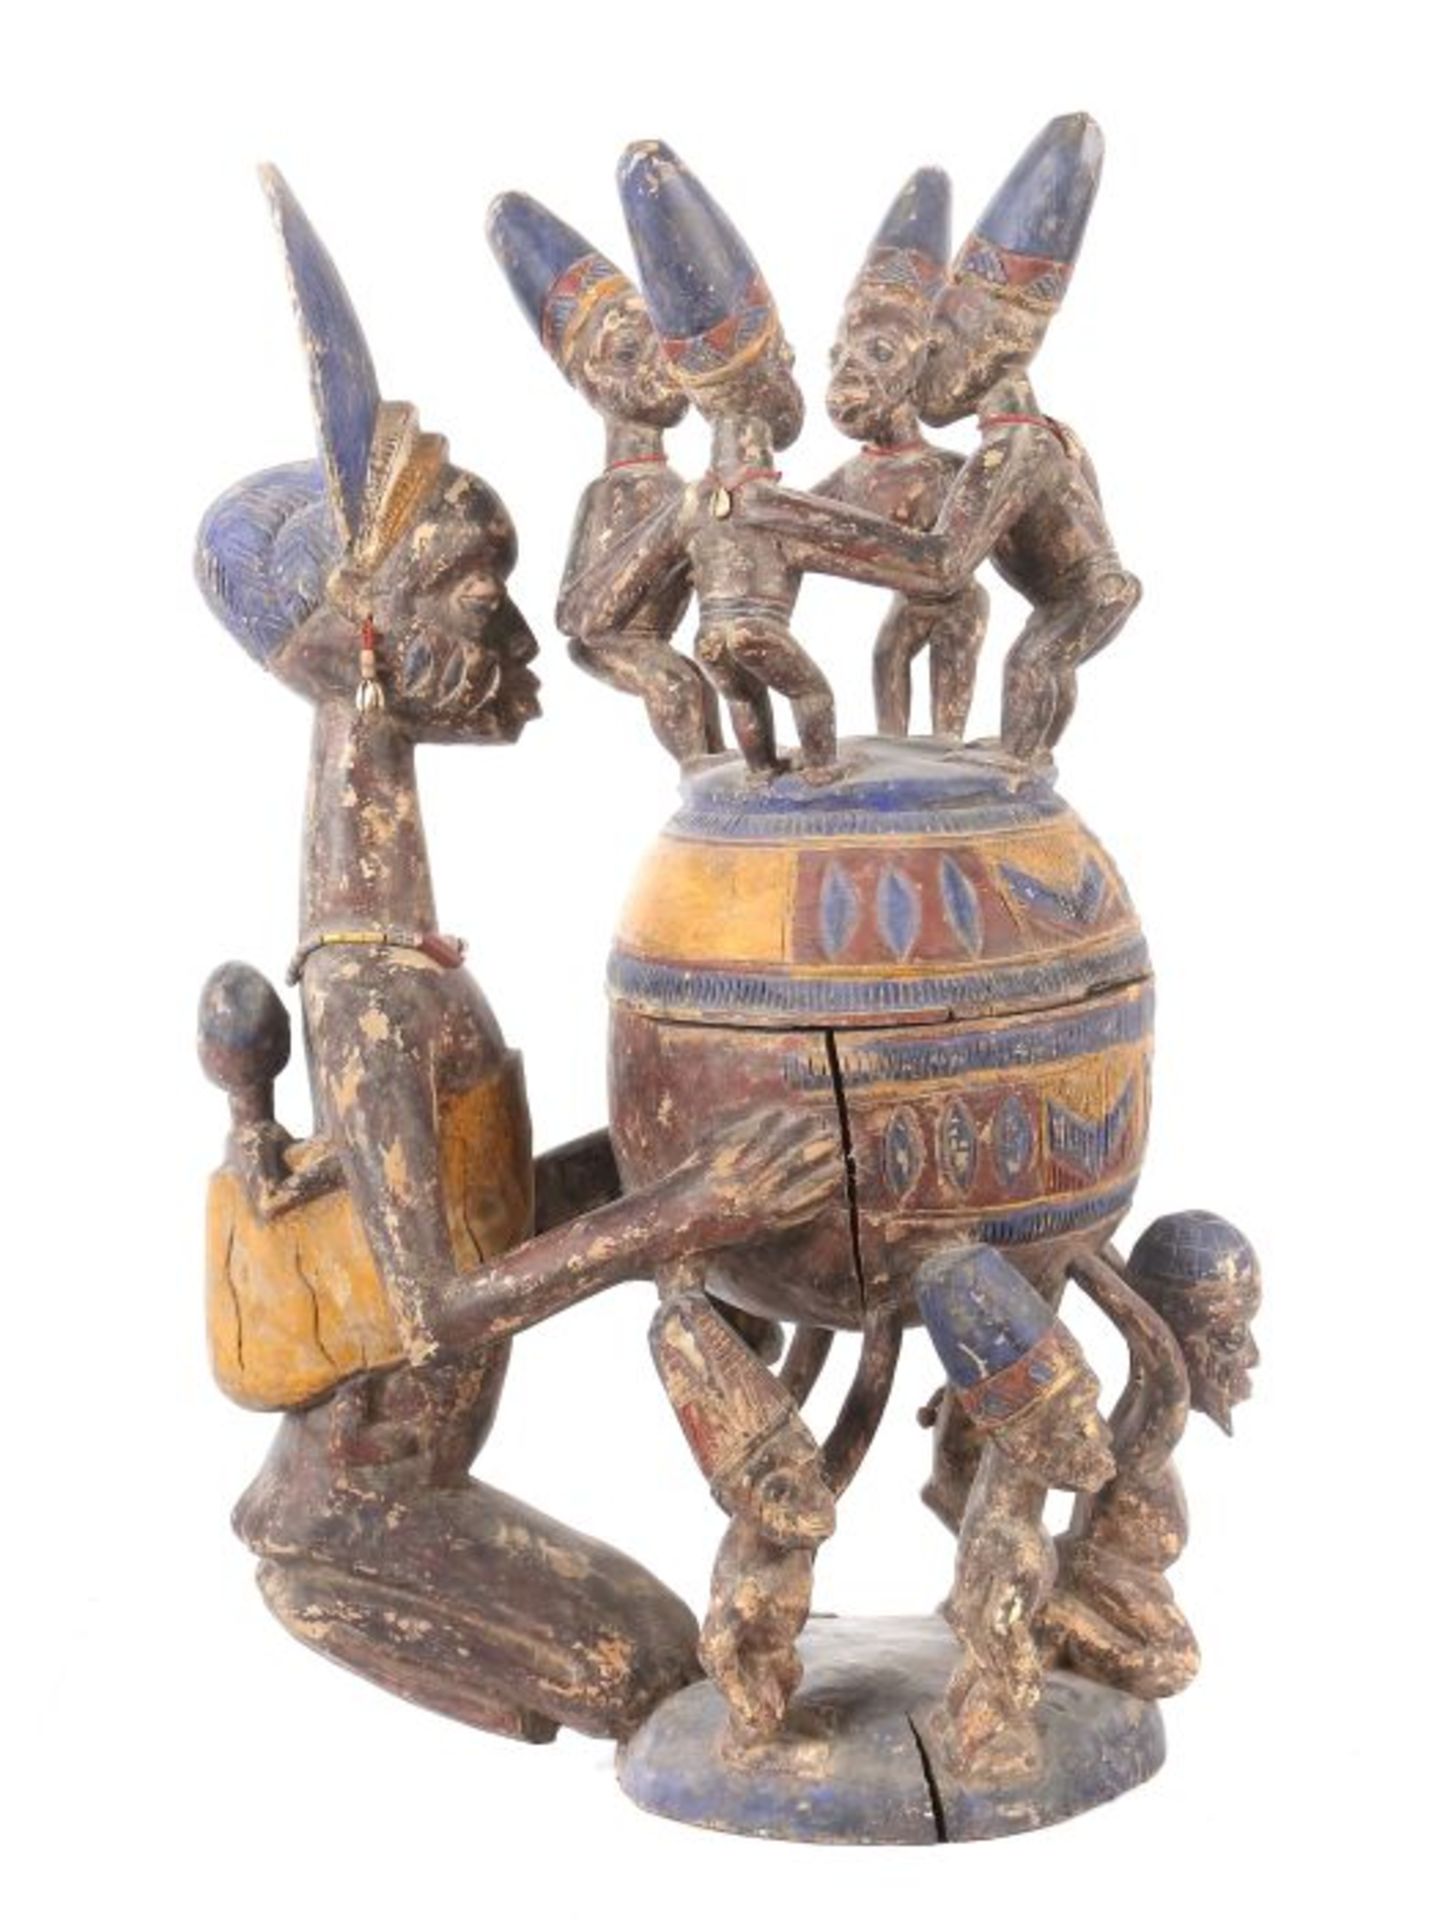 Großes Olumeye-GefäßNigeria, Stamm der Yoruba, 5 Trägerfiguren und 1 große Mutterfigur mit Kind